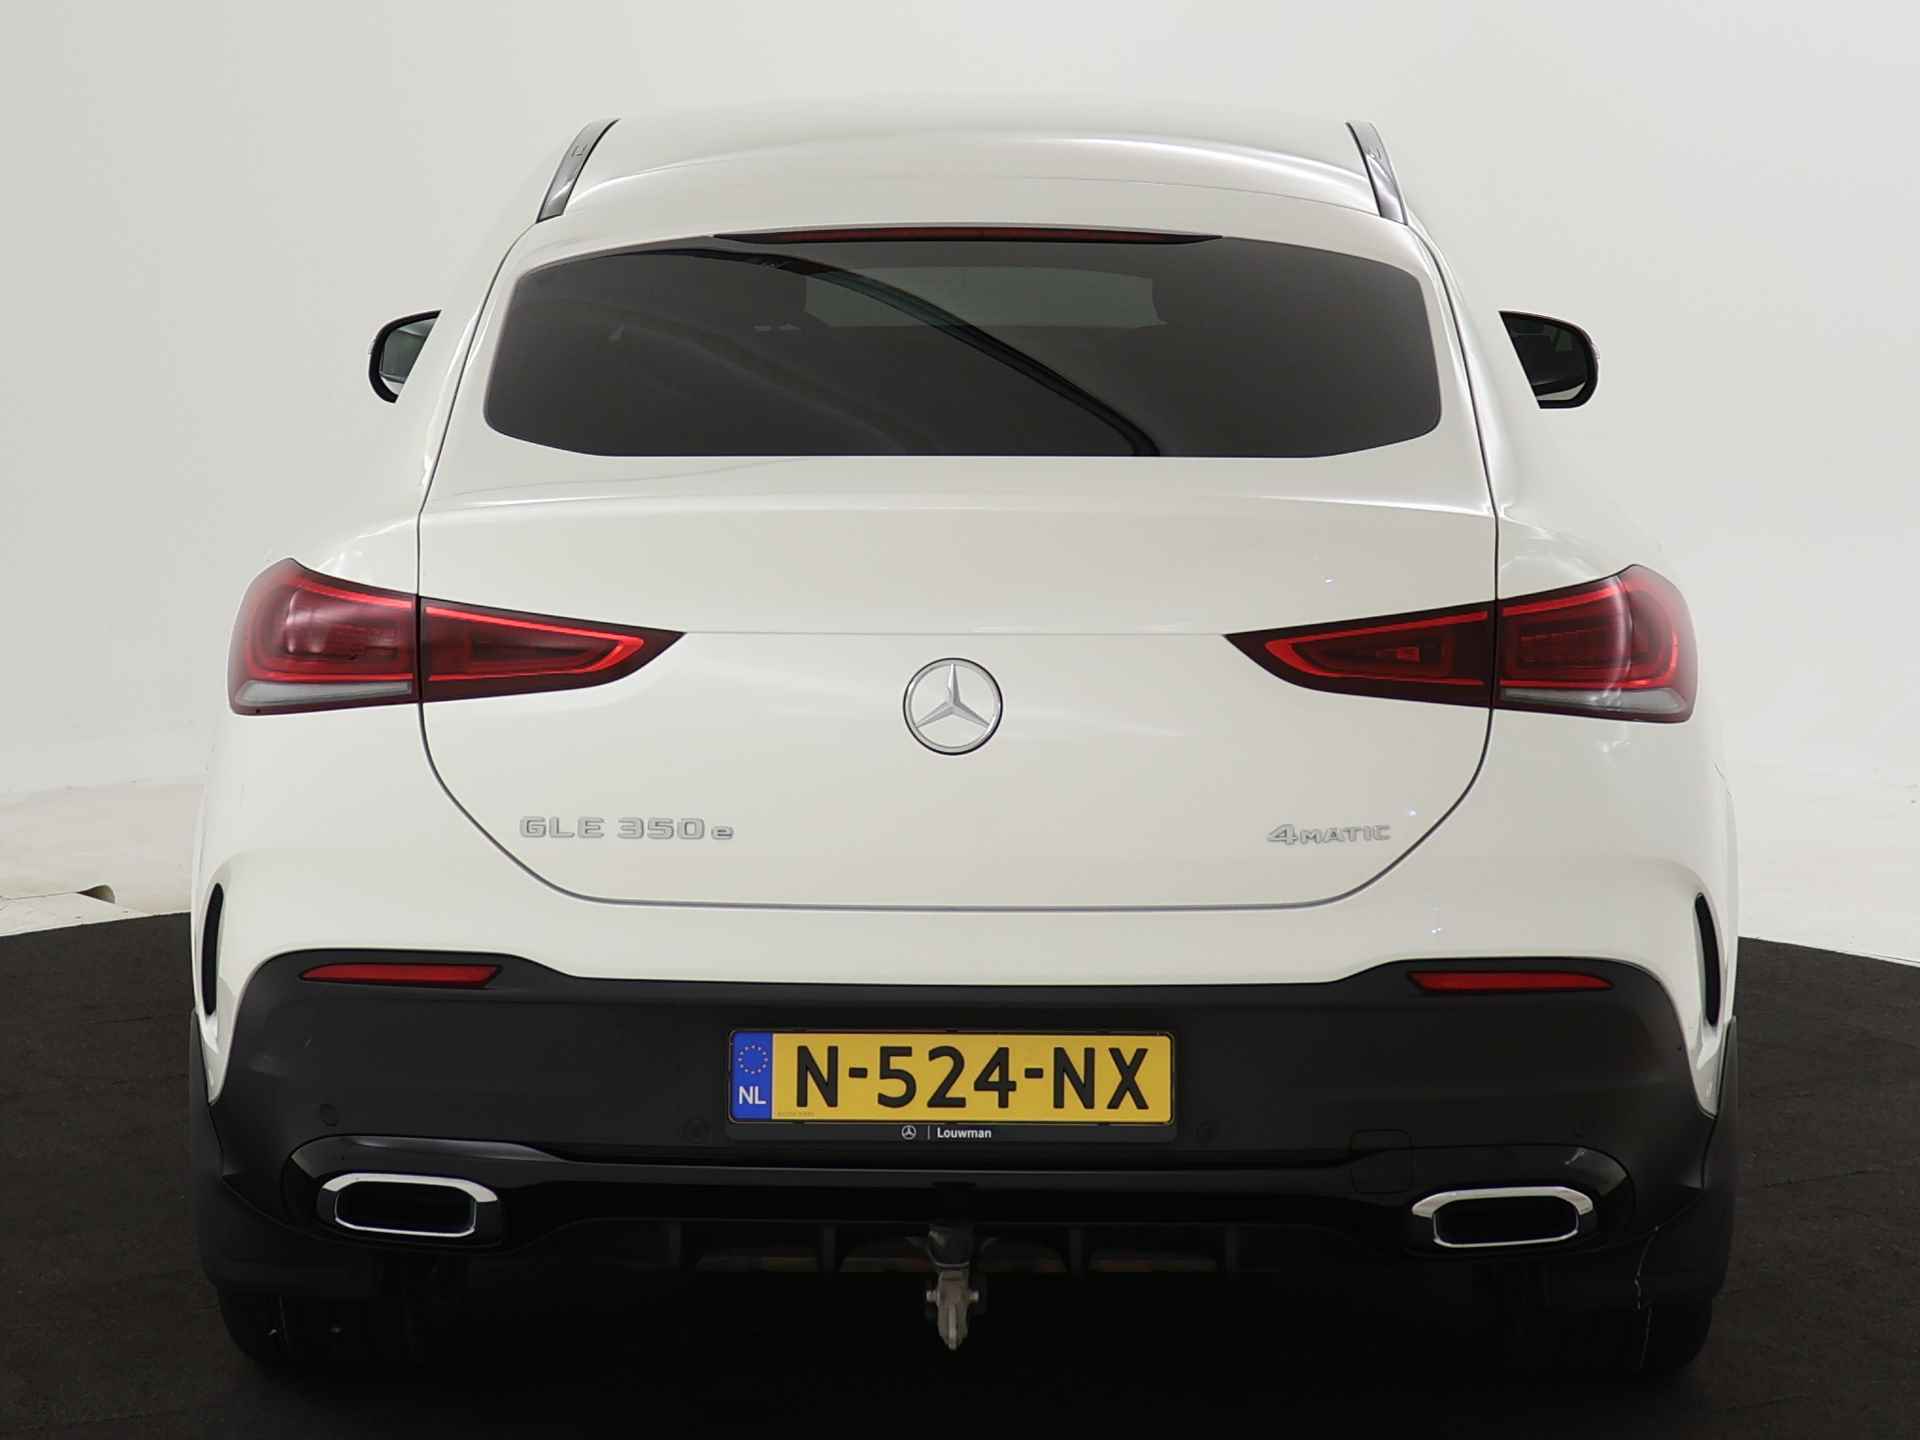 Mercedes-Benz GLE 350 e 4-MATIC AMG Nightpakket Limited 5 spaaks lichtmetalen velgen | Trekhaak | Airmatic | Treeplanken | Alarm klasse 3 |  Augmented Reality | sfeerverlichting | DAB | Parking support | inclusief 24 maanden MB Certified garantie voor europa - 29/45